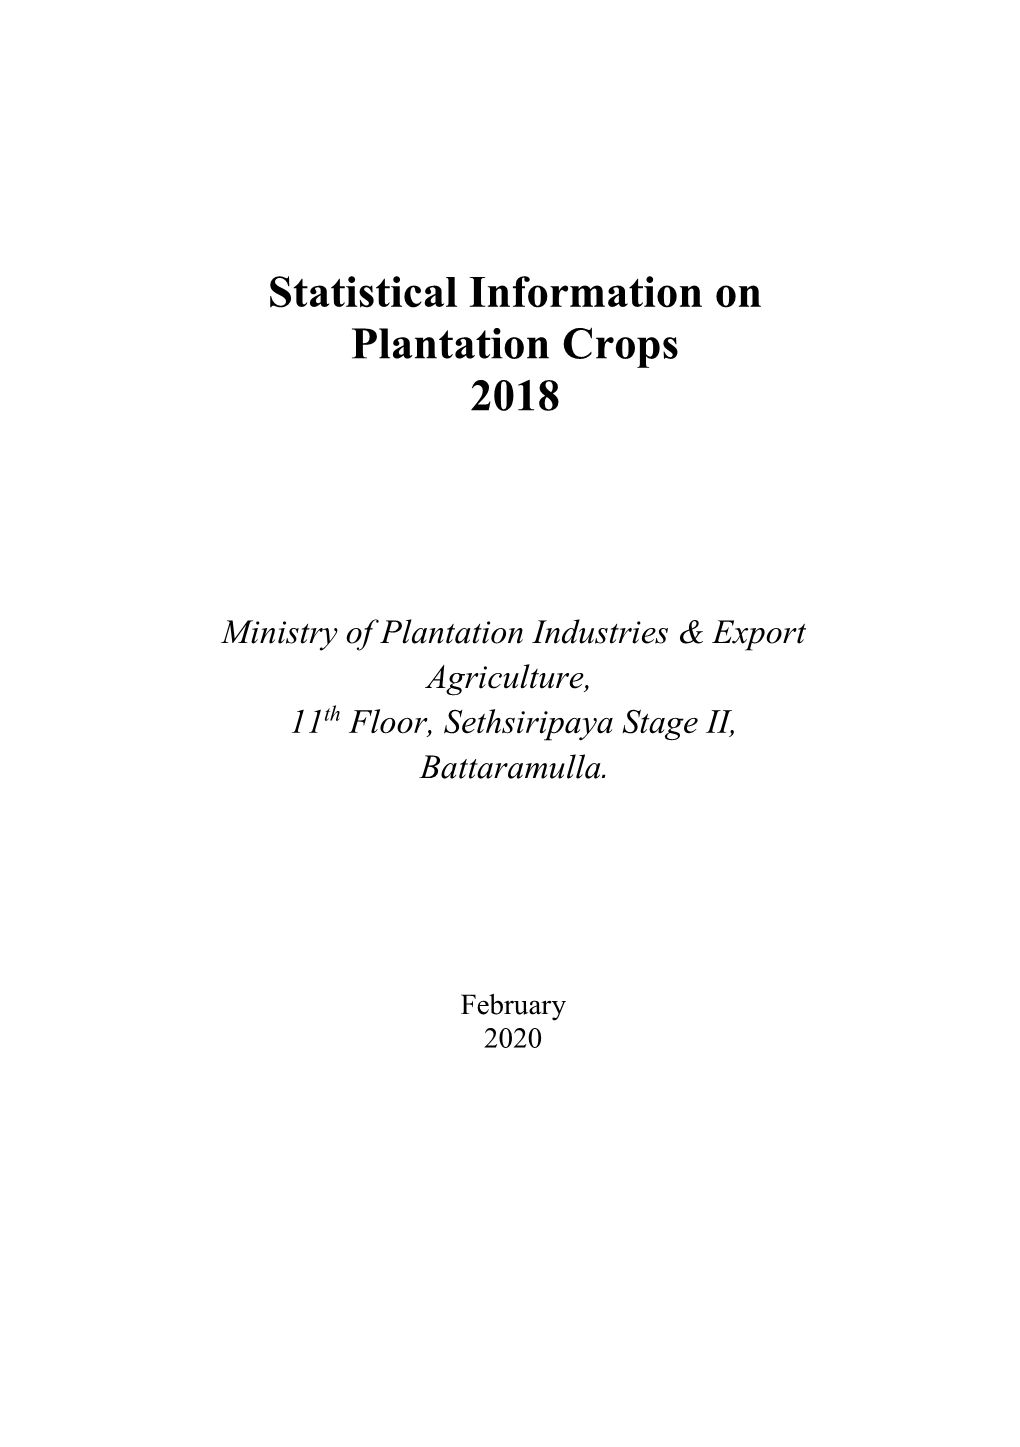 Statistical Information on Plantation Crops 2018